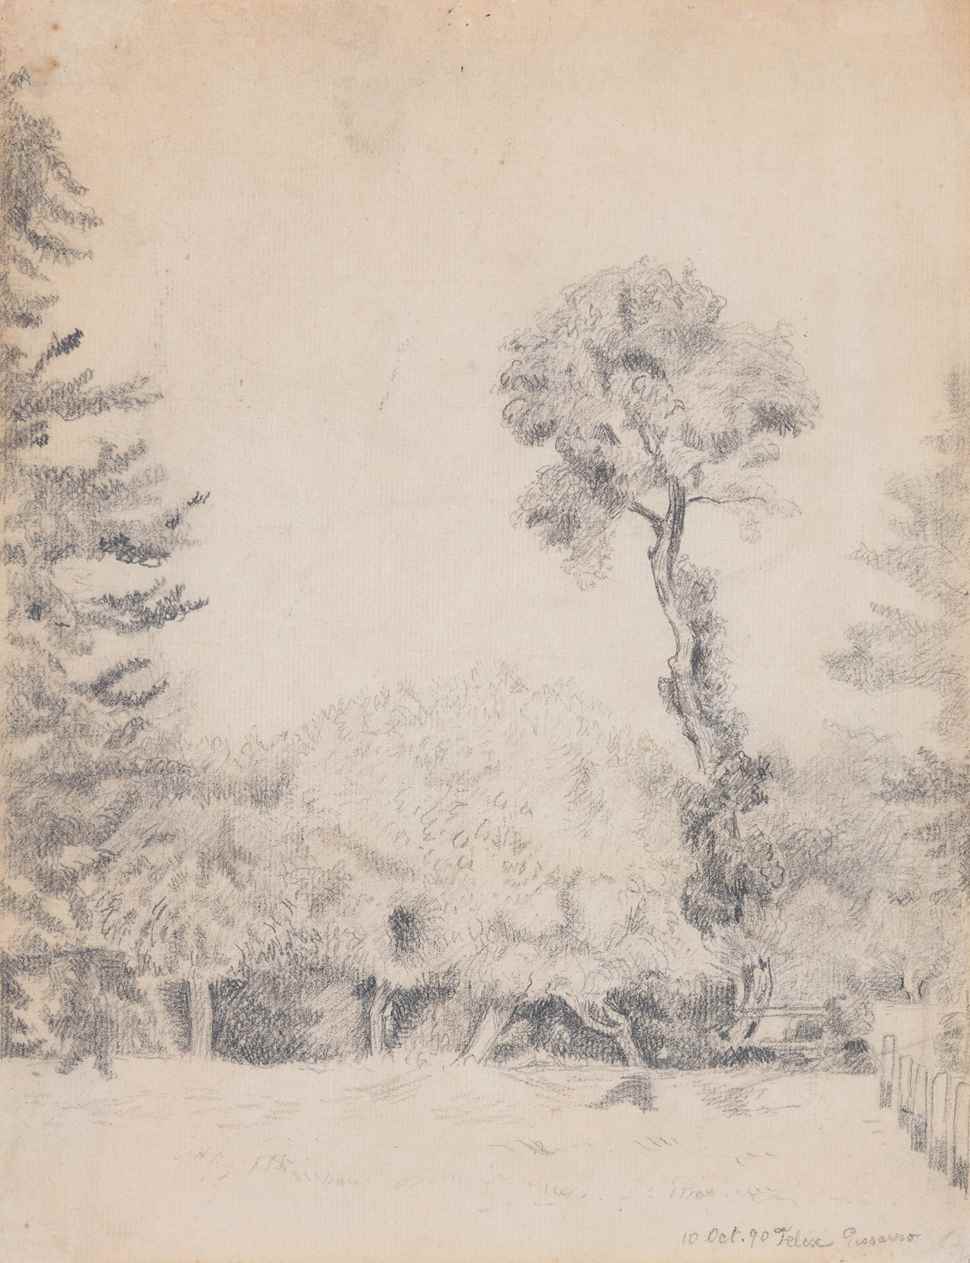 Landscape with Trees - Félix Pissarro (1874 - 1897)